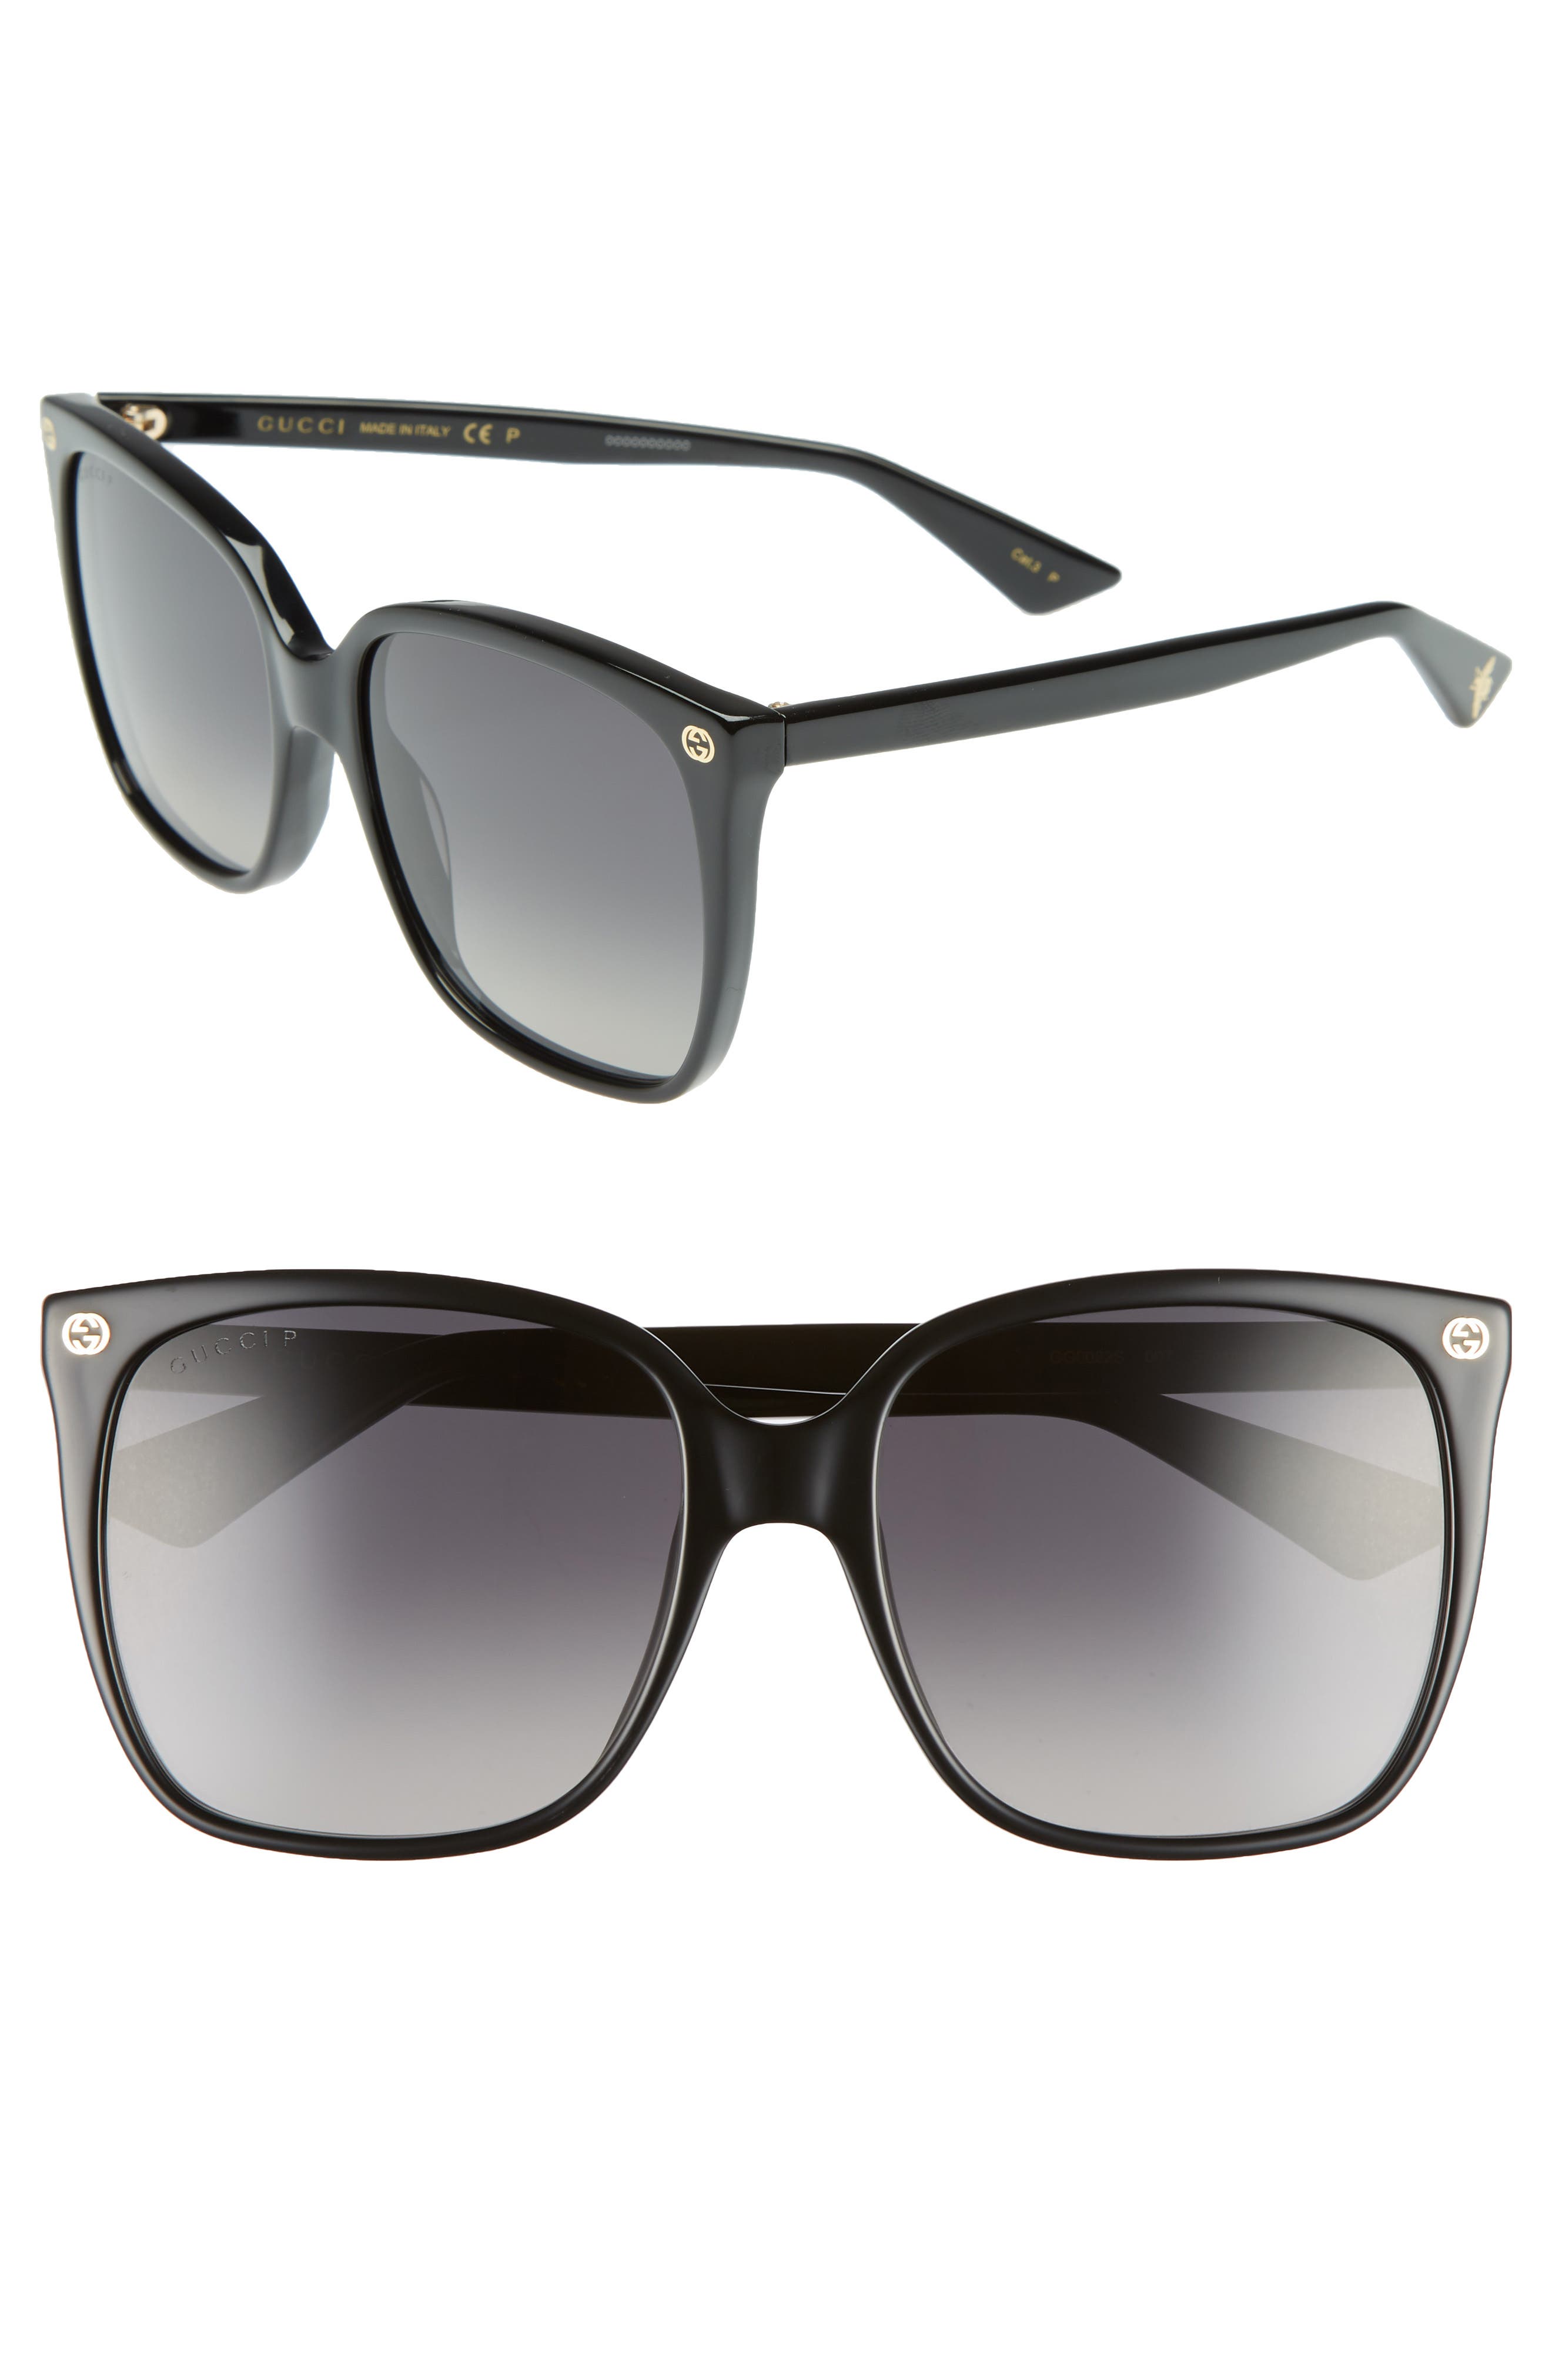 gucci 57mm square sunglasses black